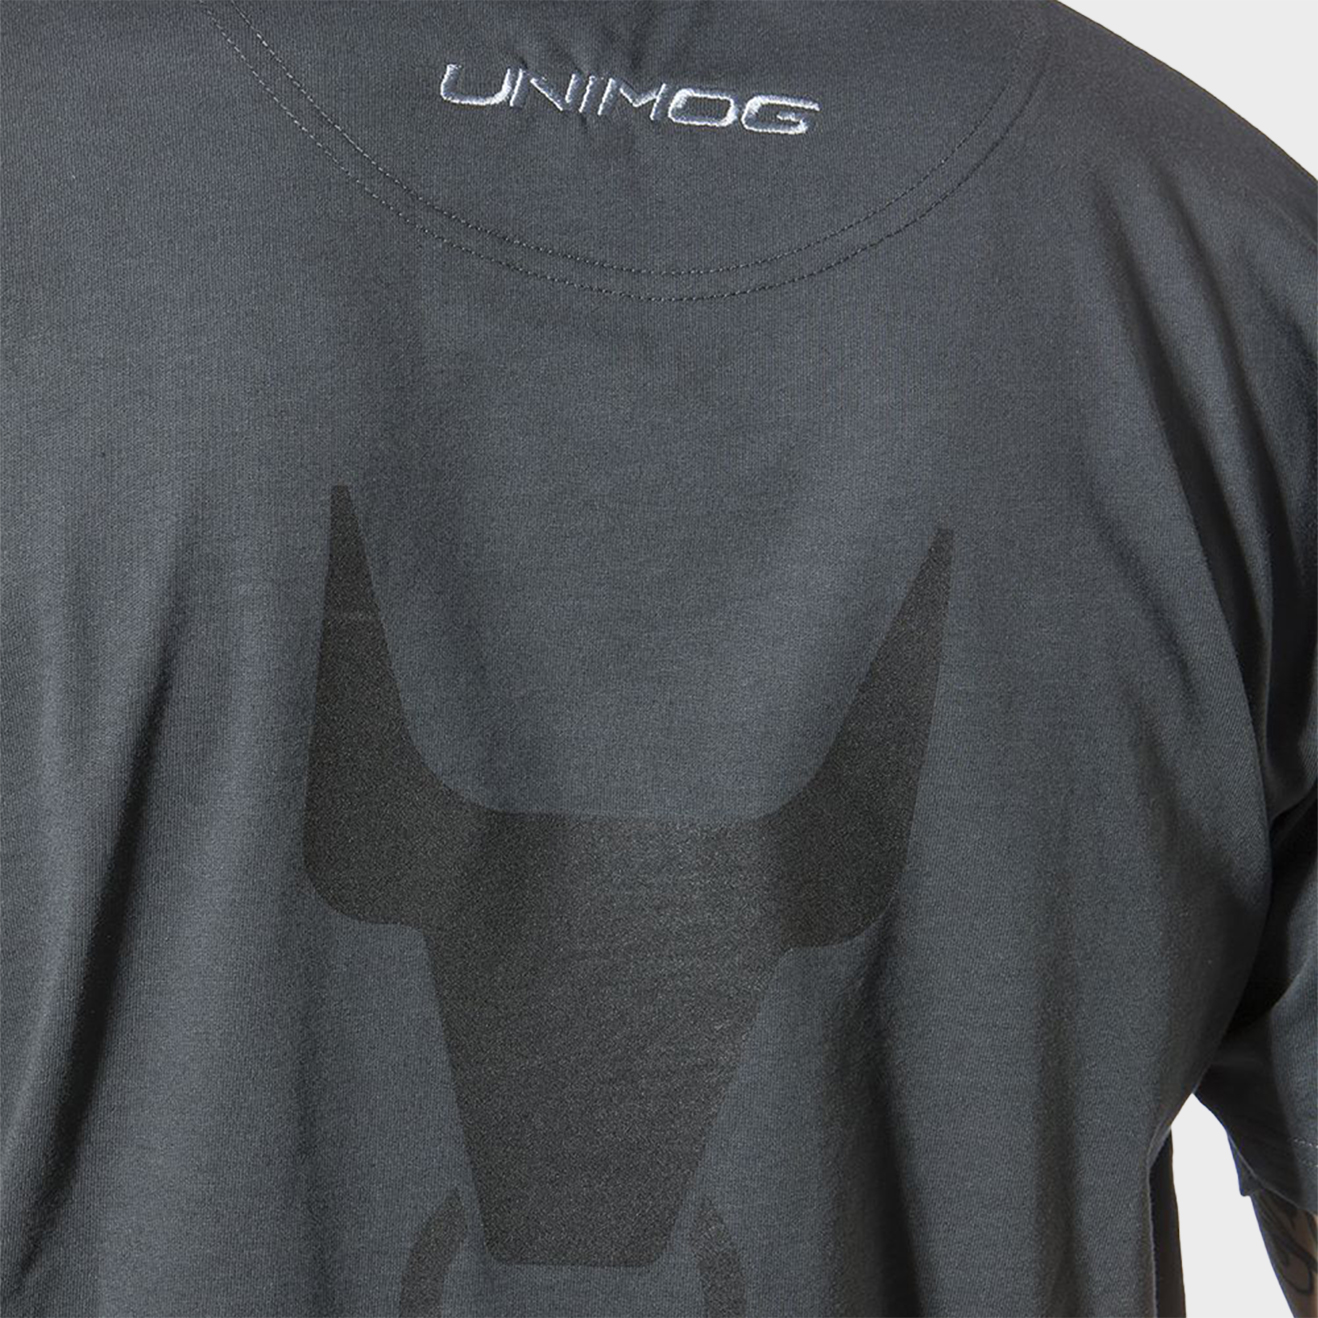 T-Shirt, Unimog, grau, mit Unimog-Logo